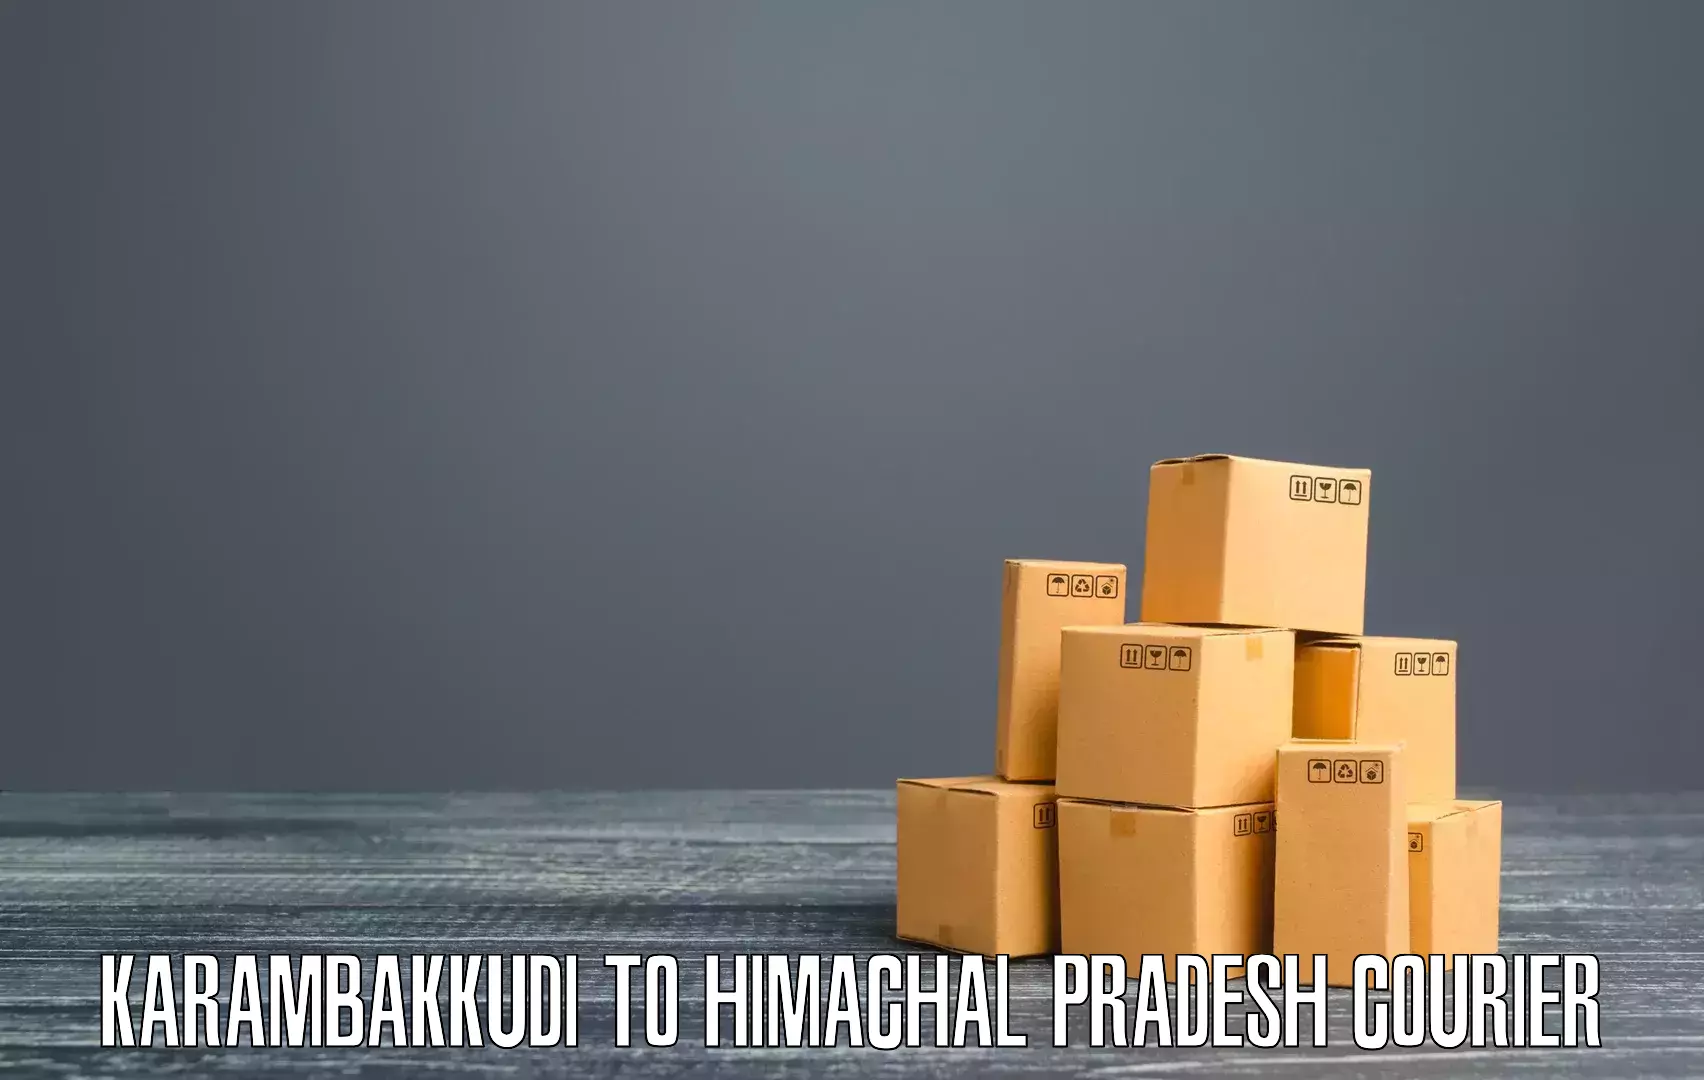 Tailored shipping plans Karambakkudi to Dharamshala